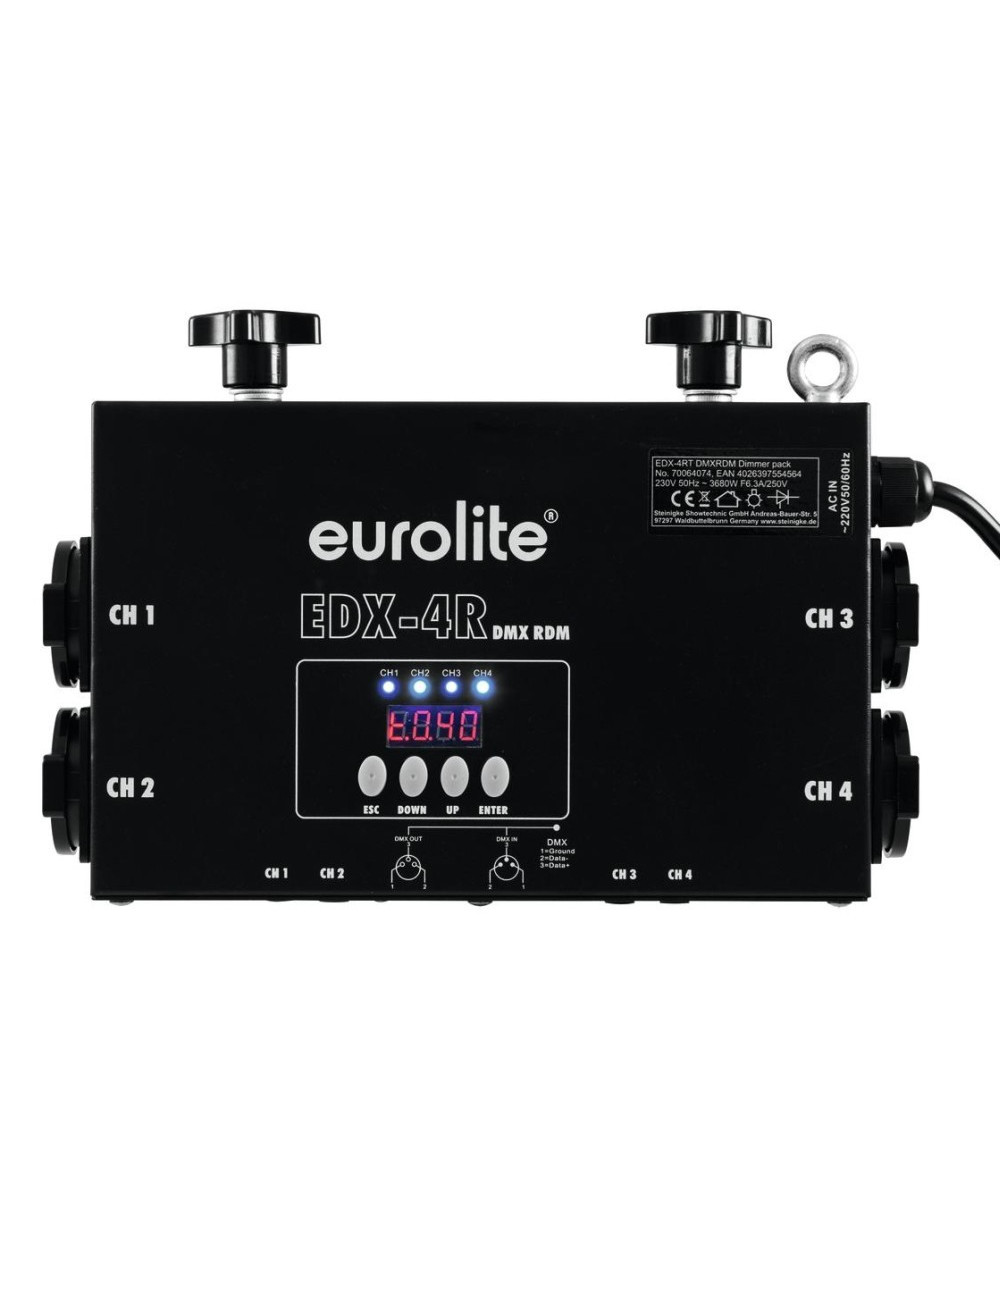 EuroLite EDX-4RT DMX RDM Truss Dimmer Pack